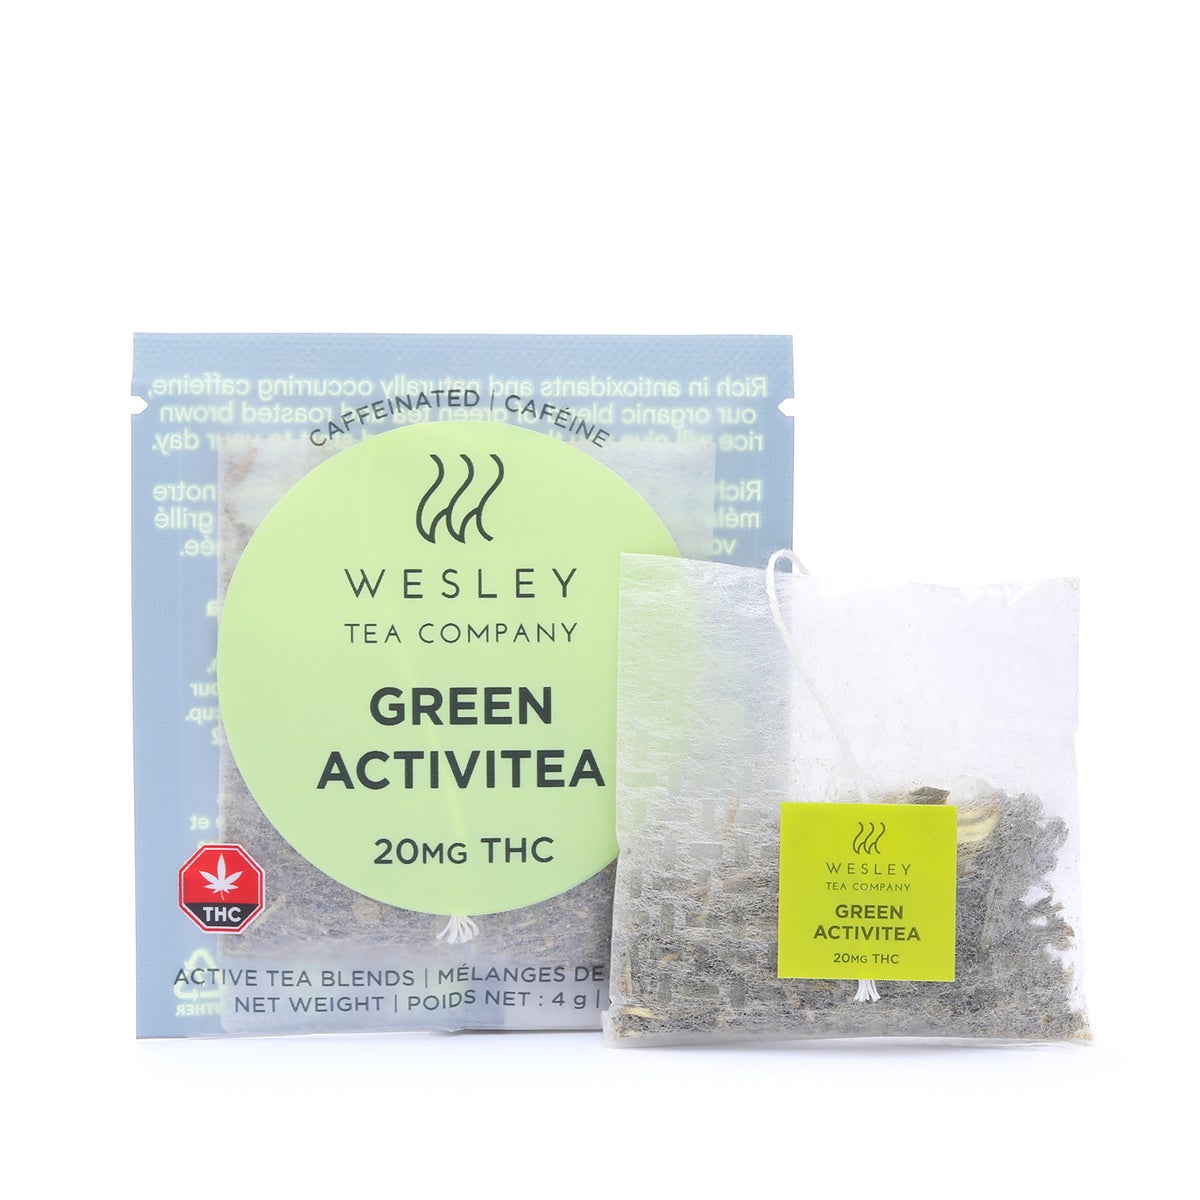 Wesley Tea Co. Green Activitea